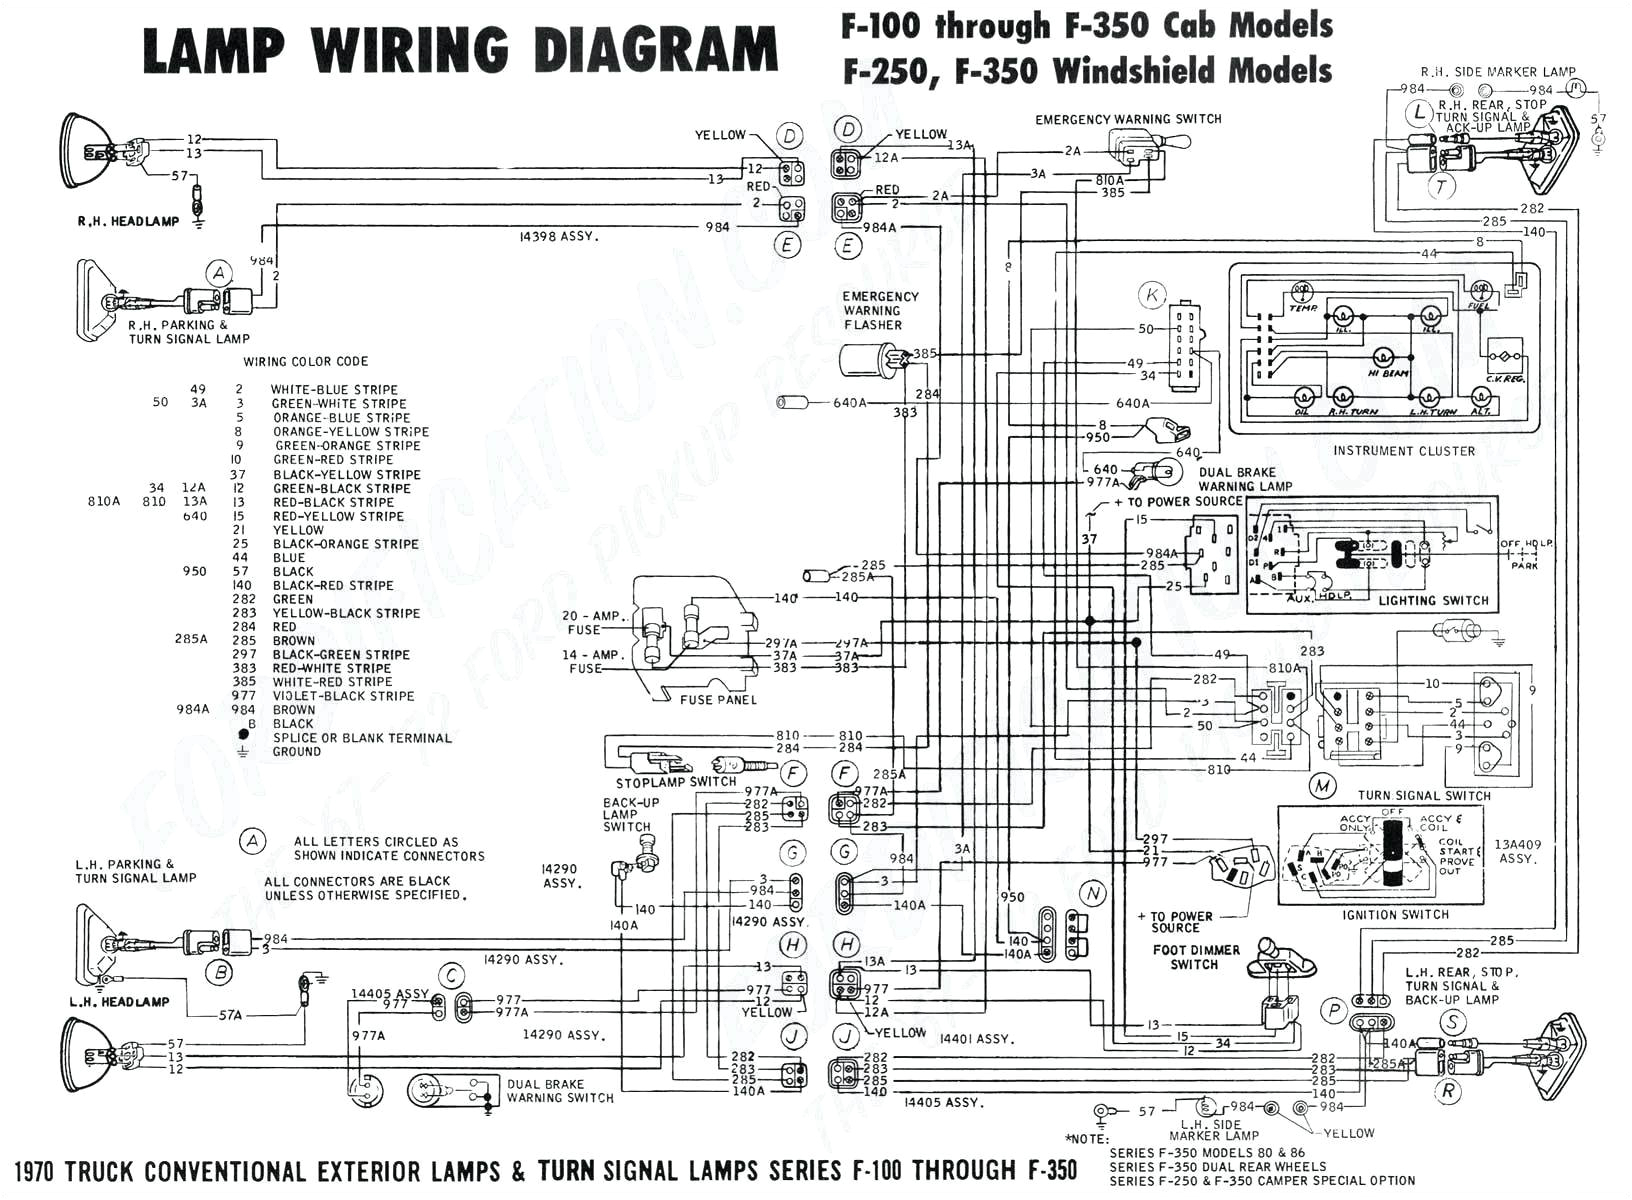 2006 ford Super Duty Wiring Diagram 2003 ford F350 Super Duty Wiring Diagram Wiring Diagram